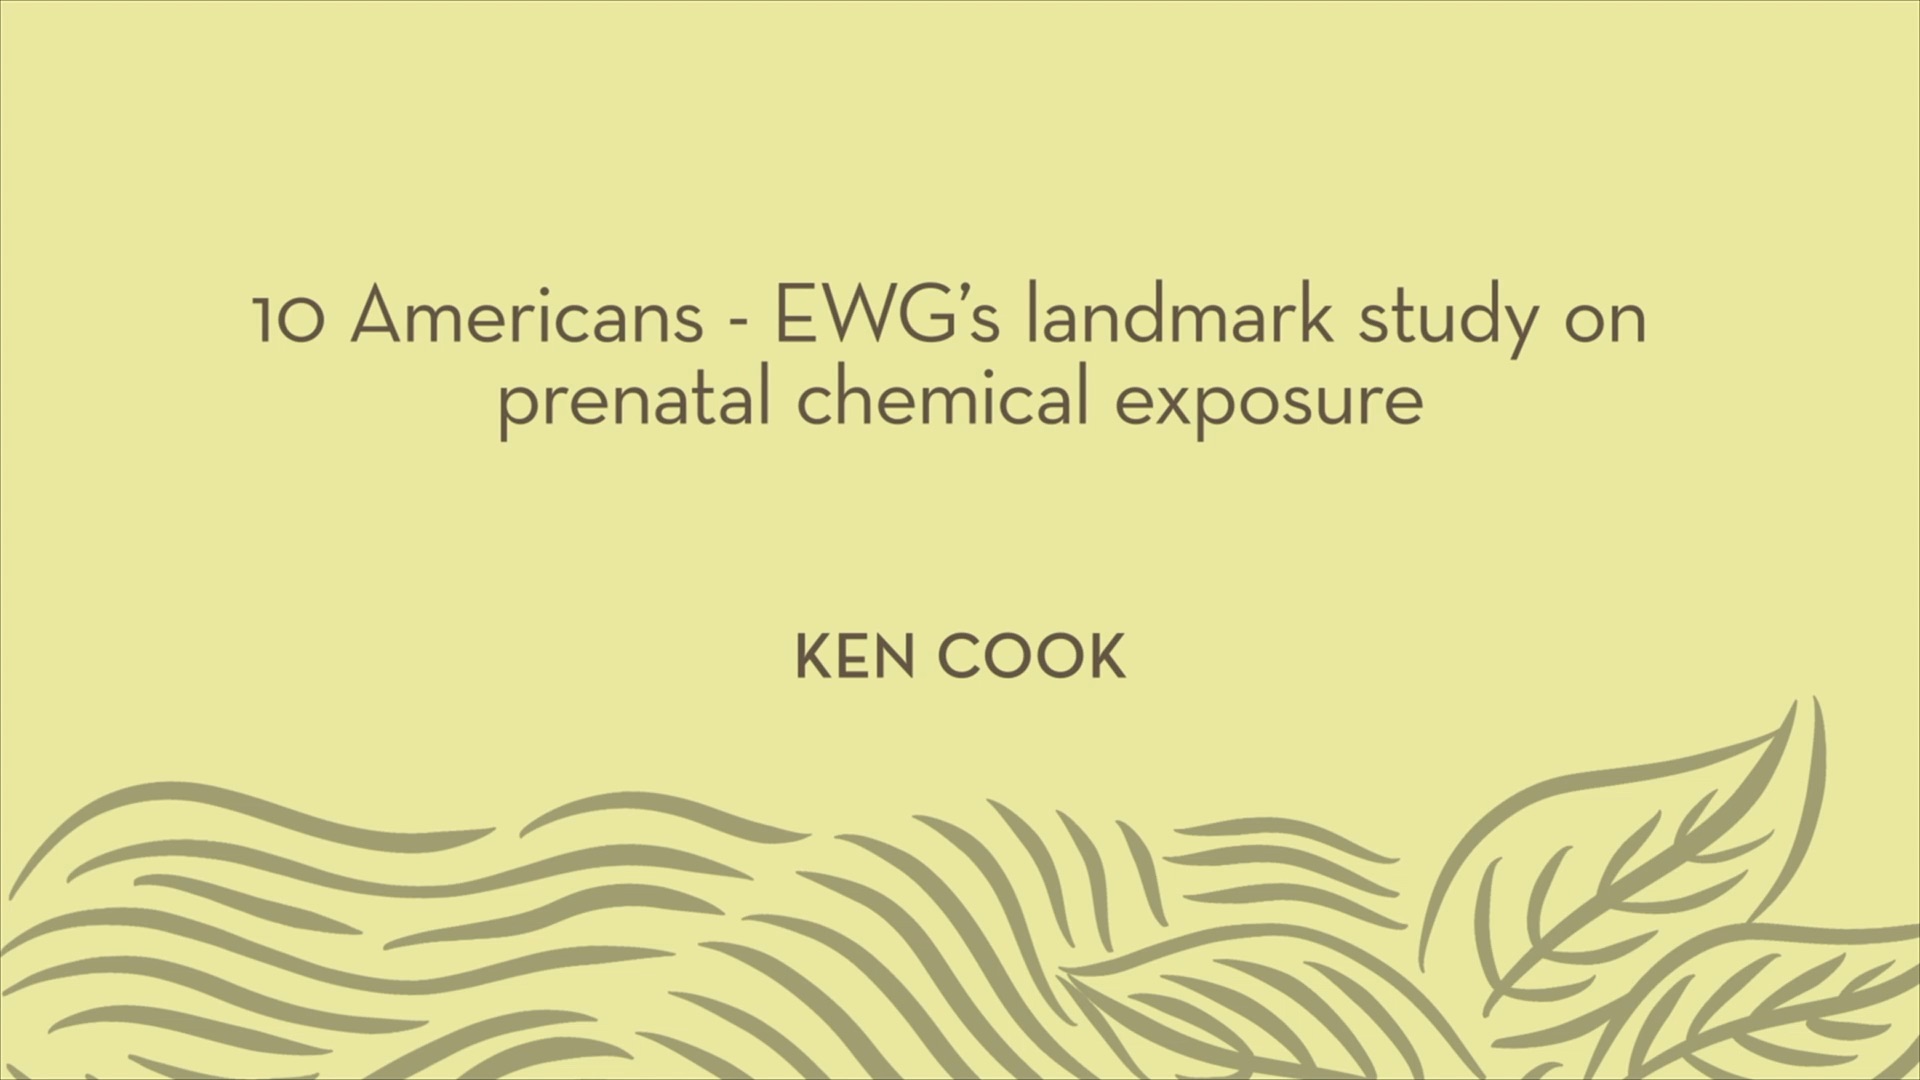 Ken Cook | 10 American - EWG's landmark study on prenatal chemical exposure